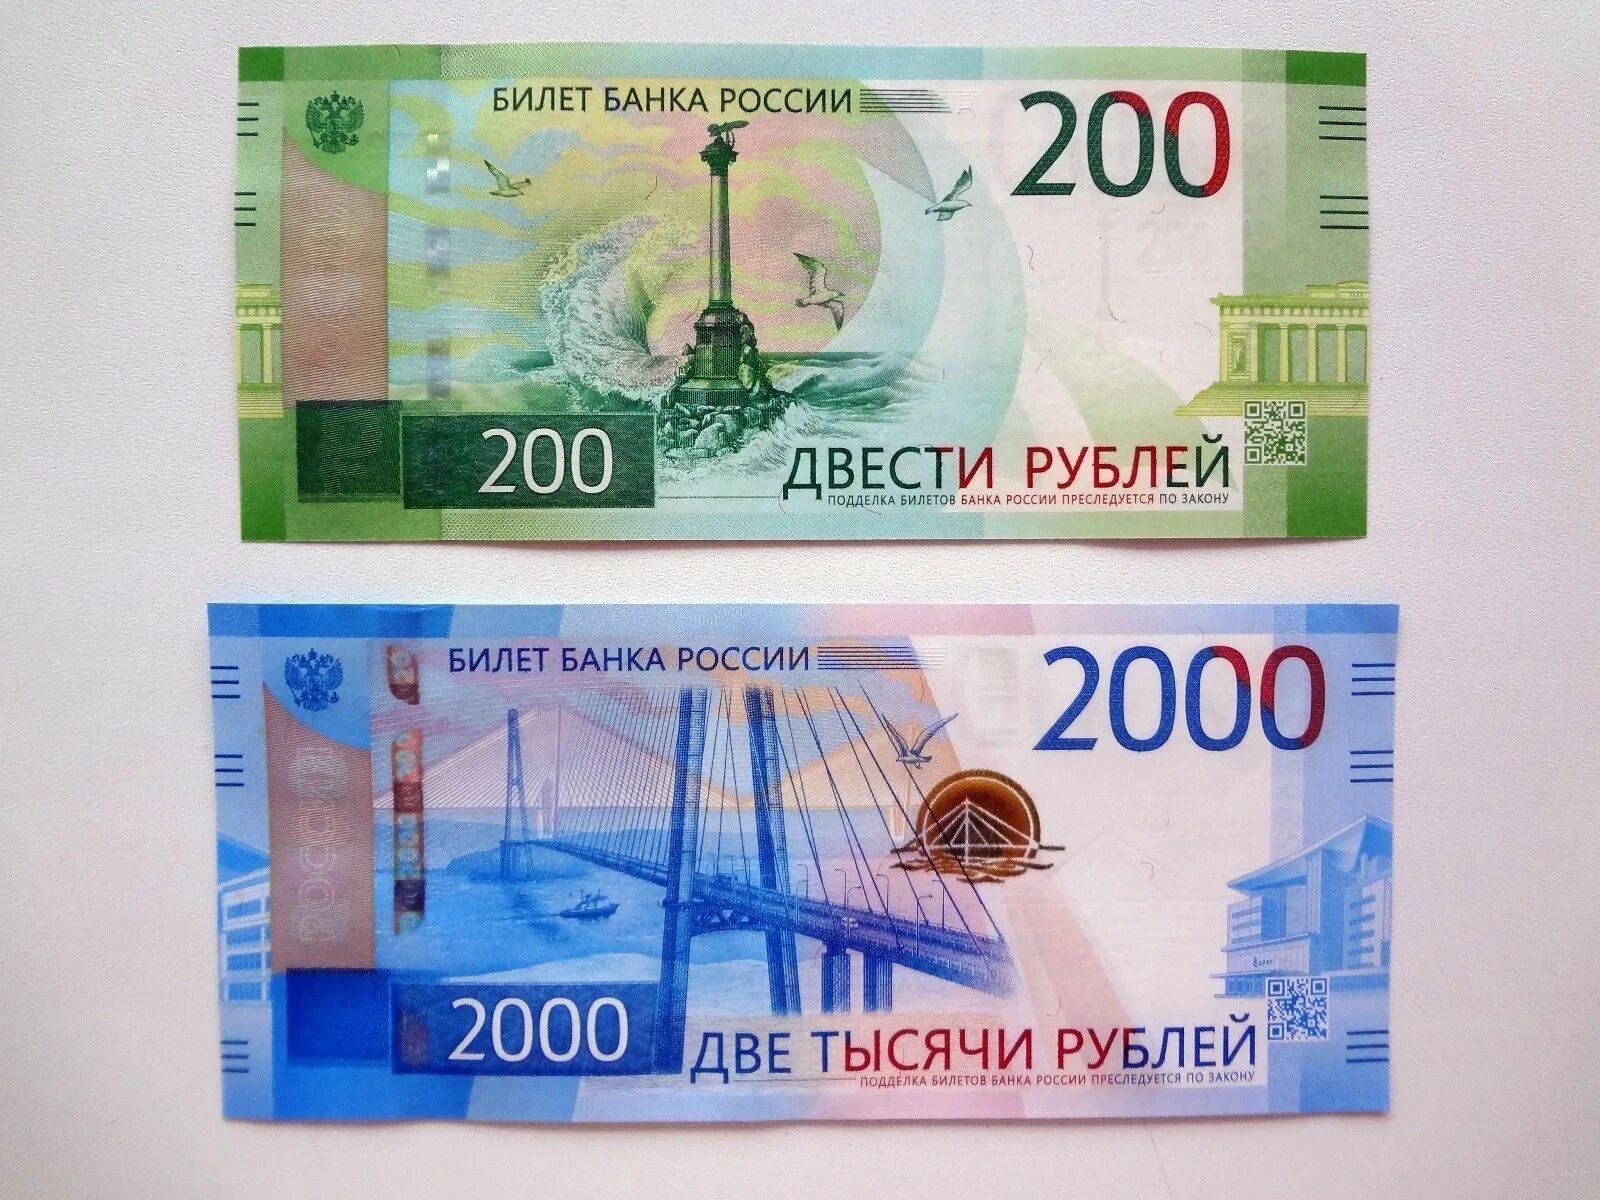 Двести четыре рубля. Купюра 2000 рублей. Билет банка России 2000 рублей. 200 И 2000 рублей. Купюра 200.